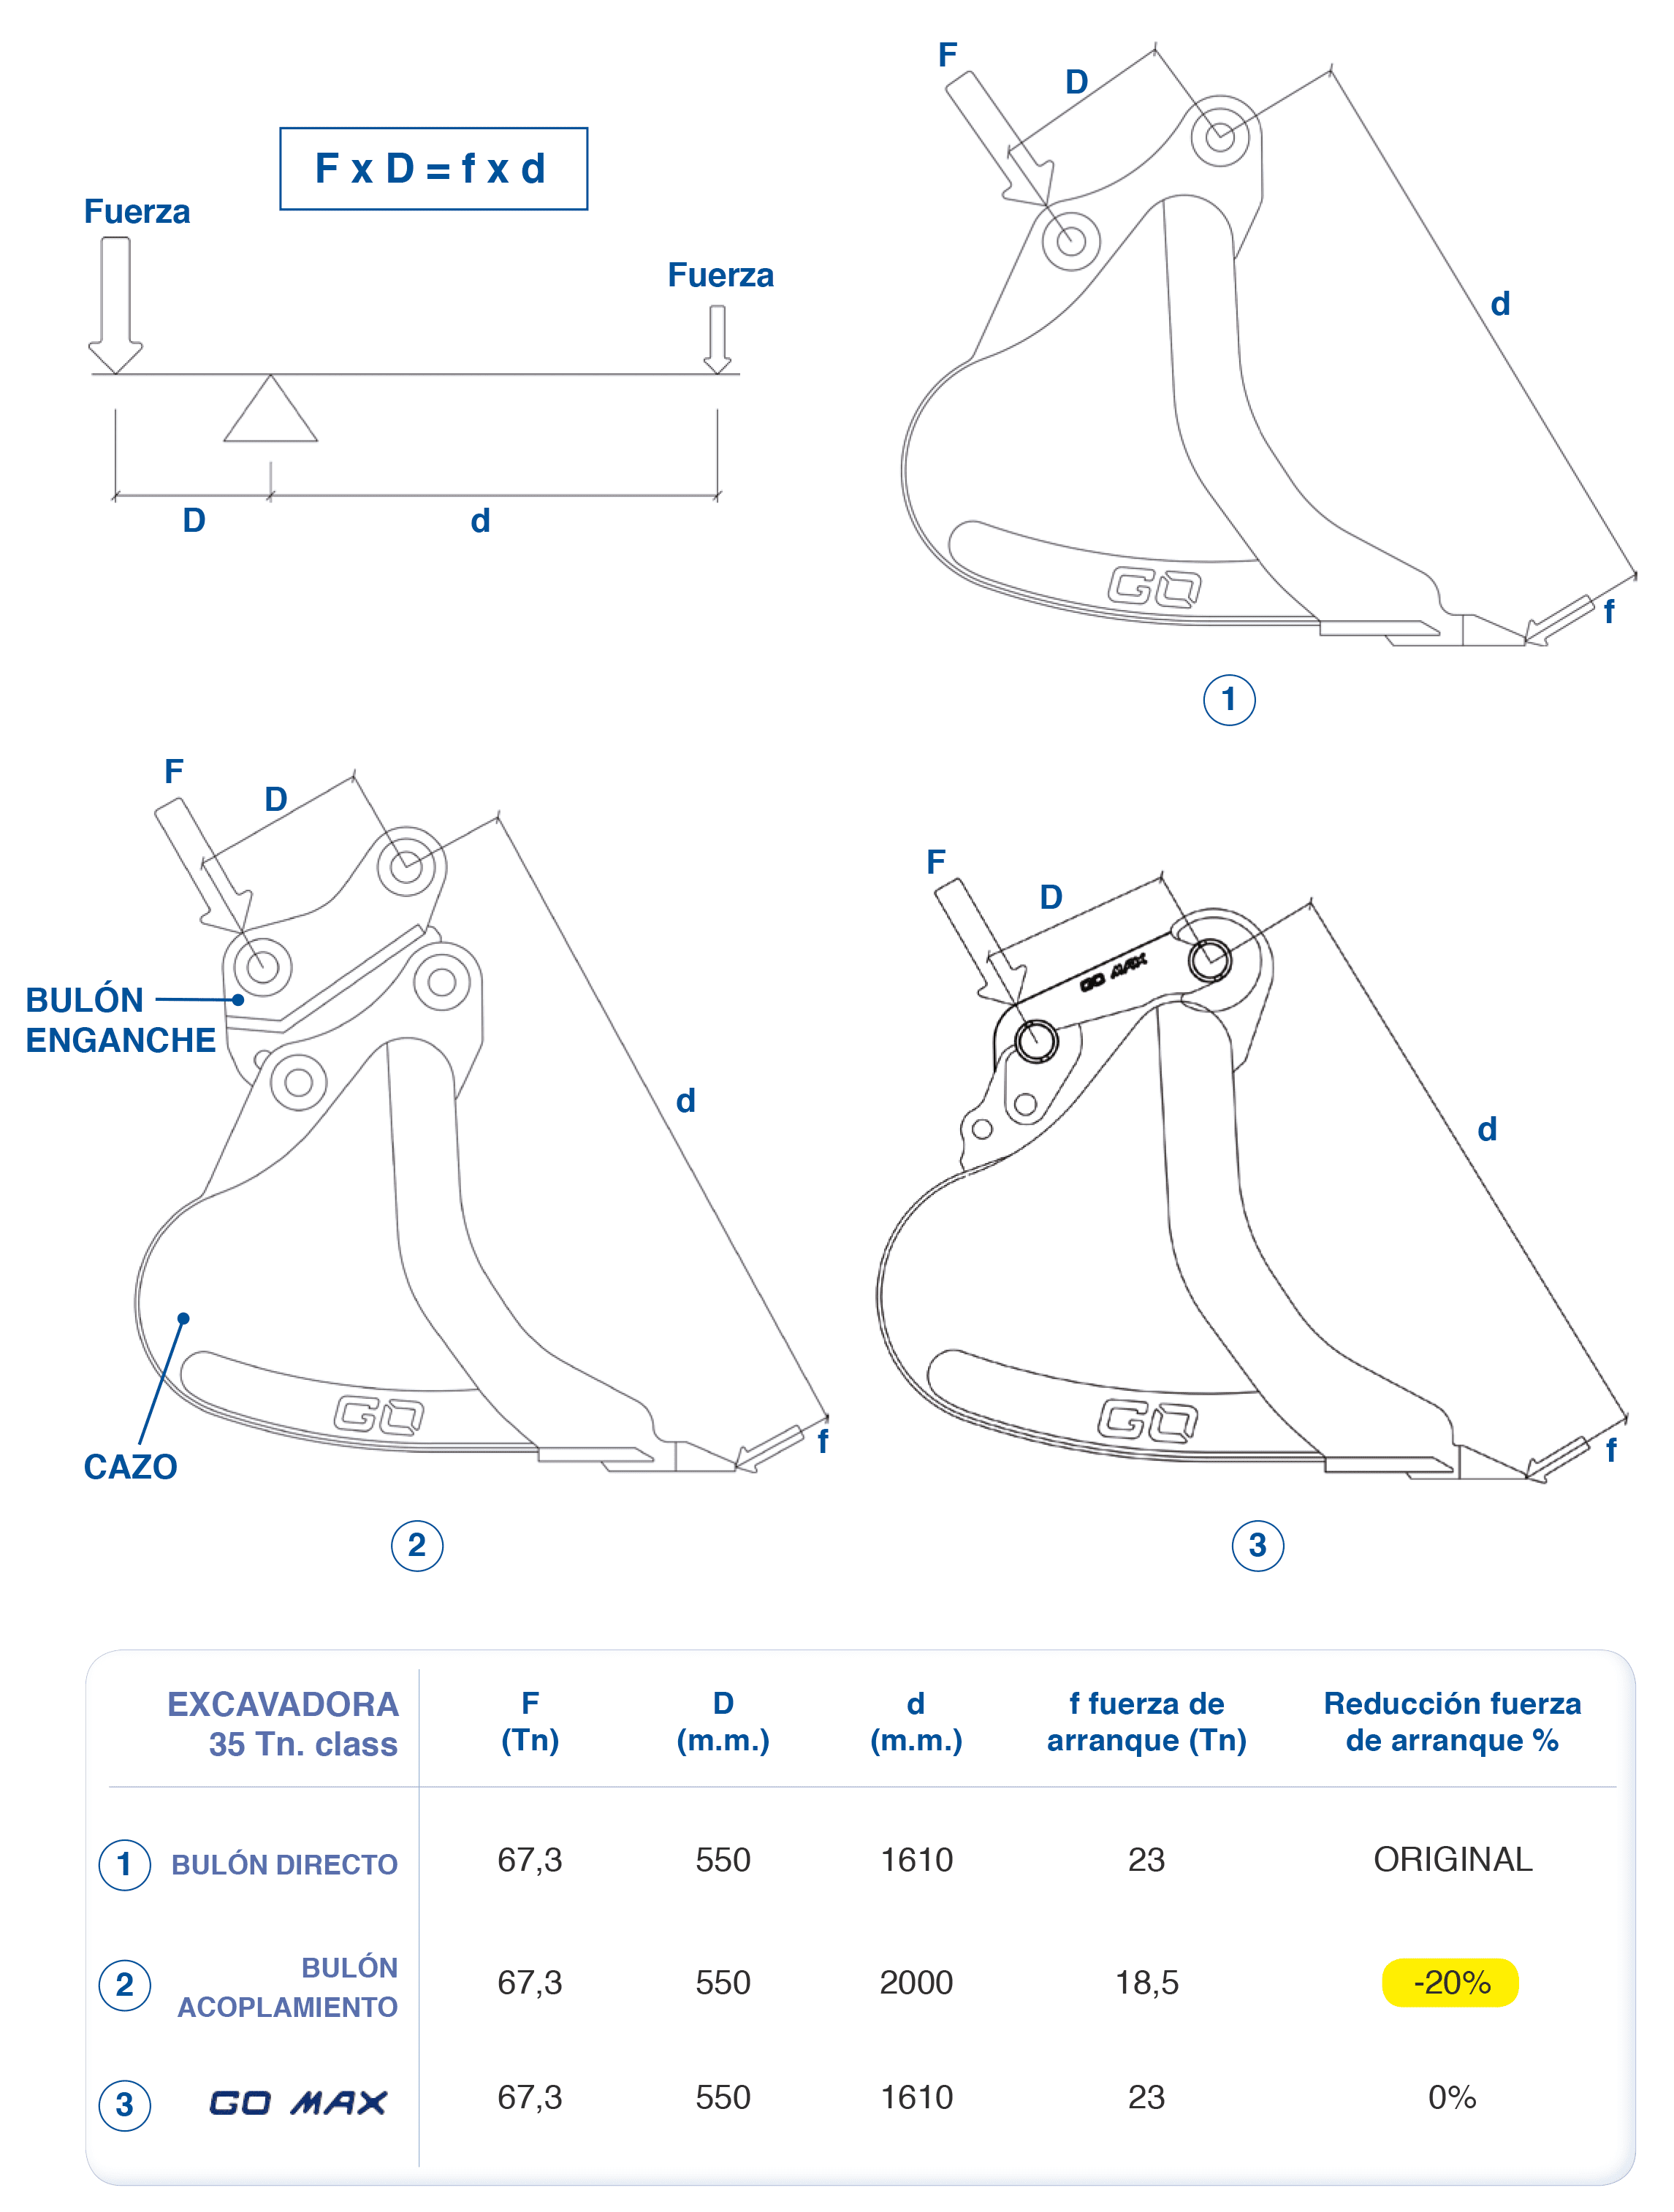 Dibujos y cuadro con las comparativas de la fuerza entre el enganche GO MAX y otros enganches